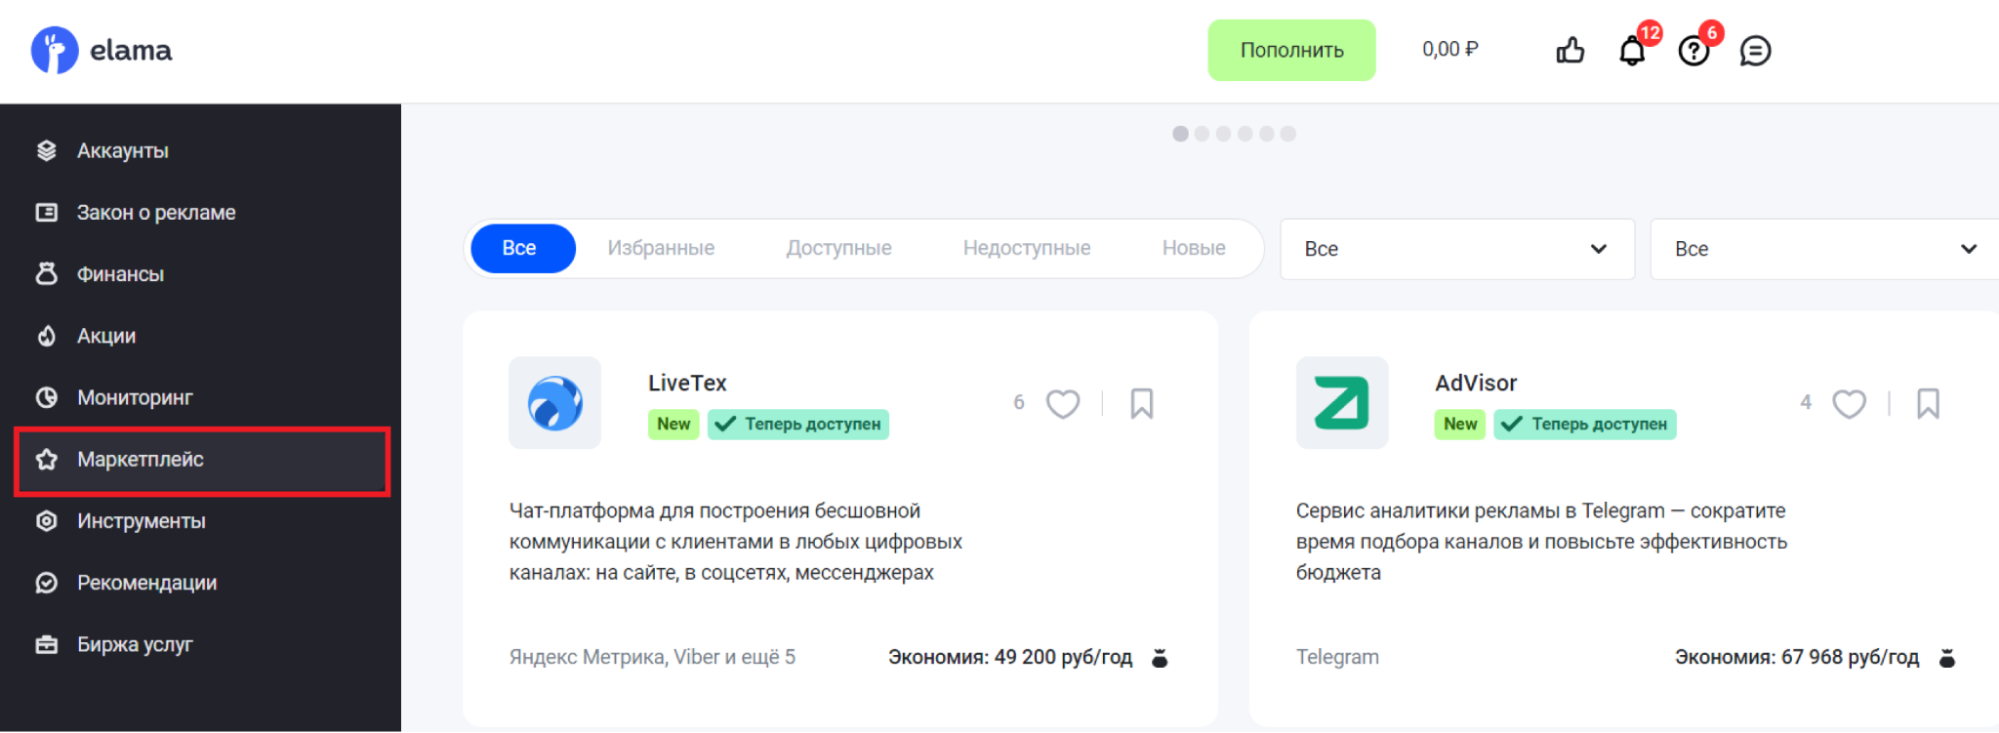 LiveTex и AdVisor